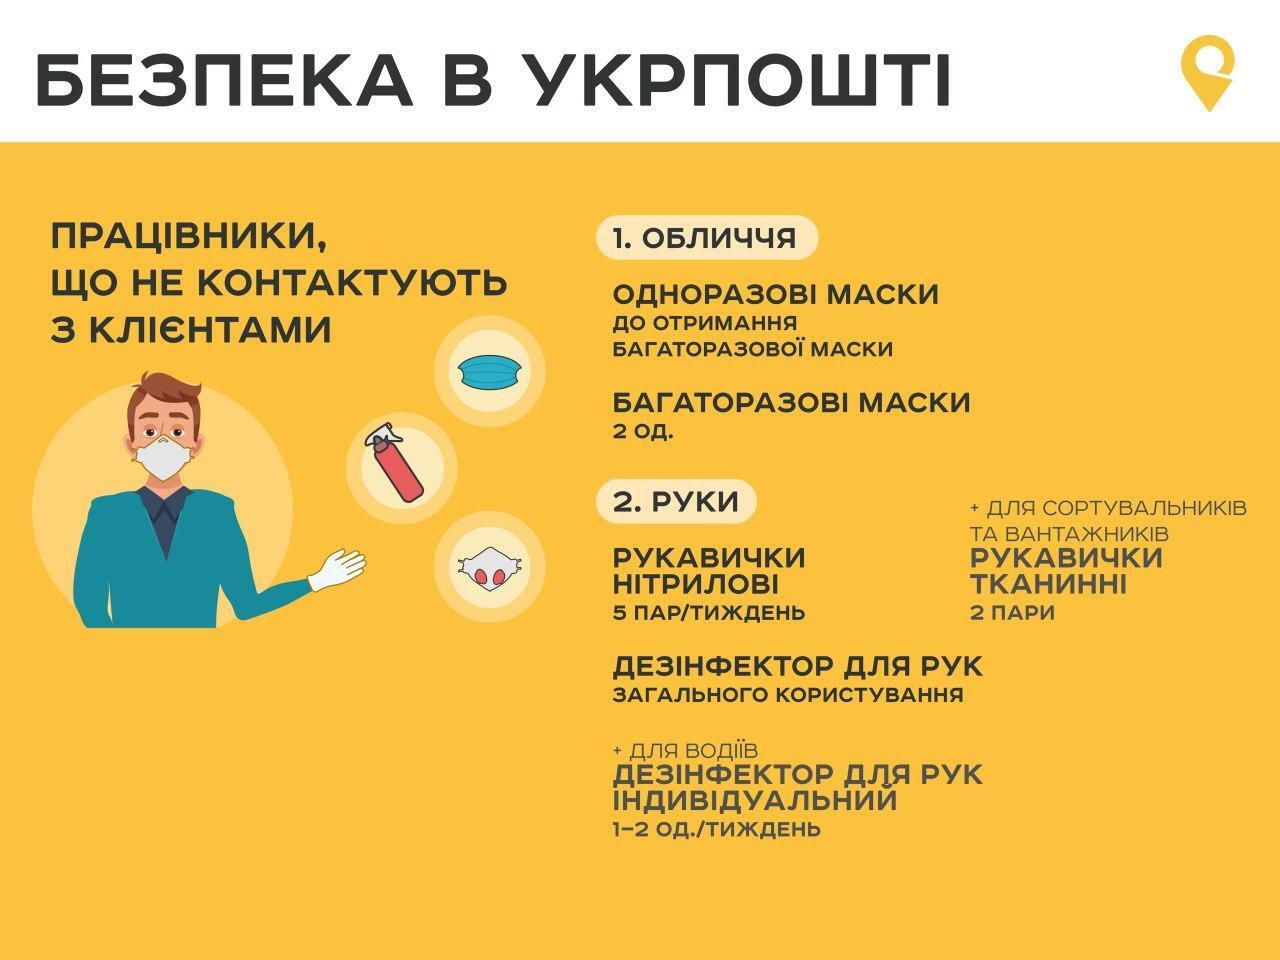 В "Укрпошті" різко підвищили зарплати: за коронавірус дадуть по 25 тис. грн